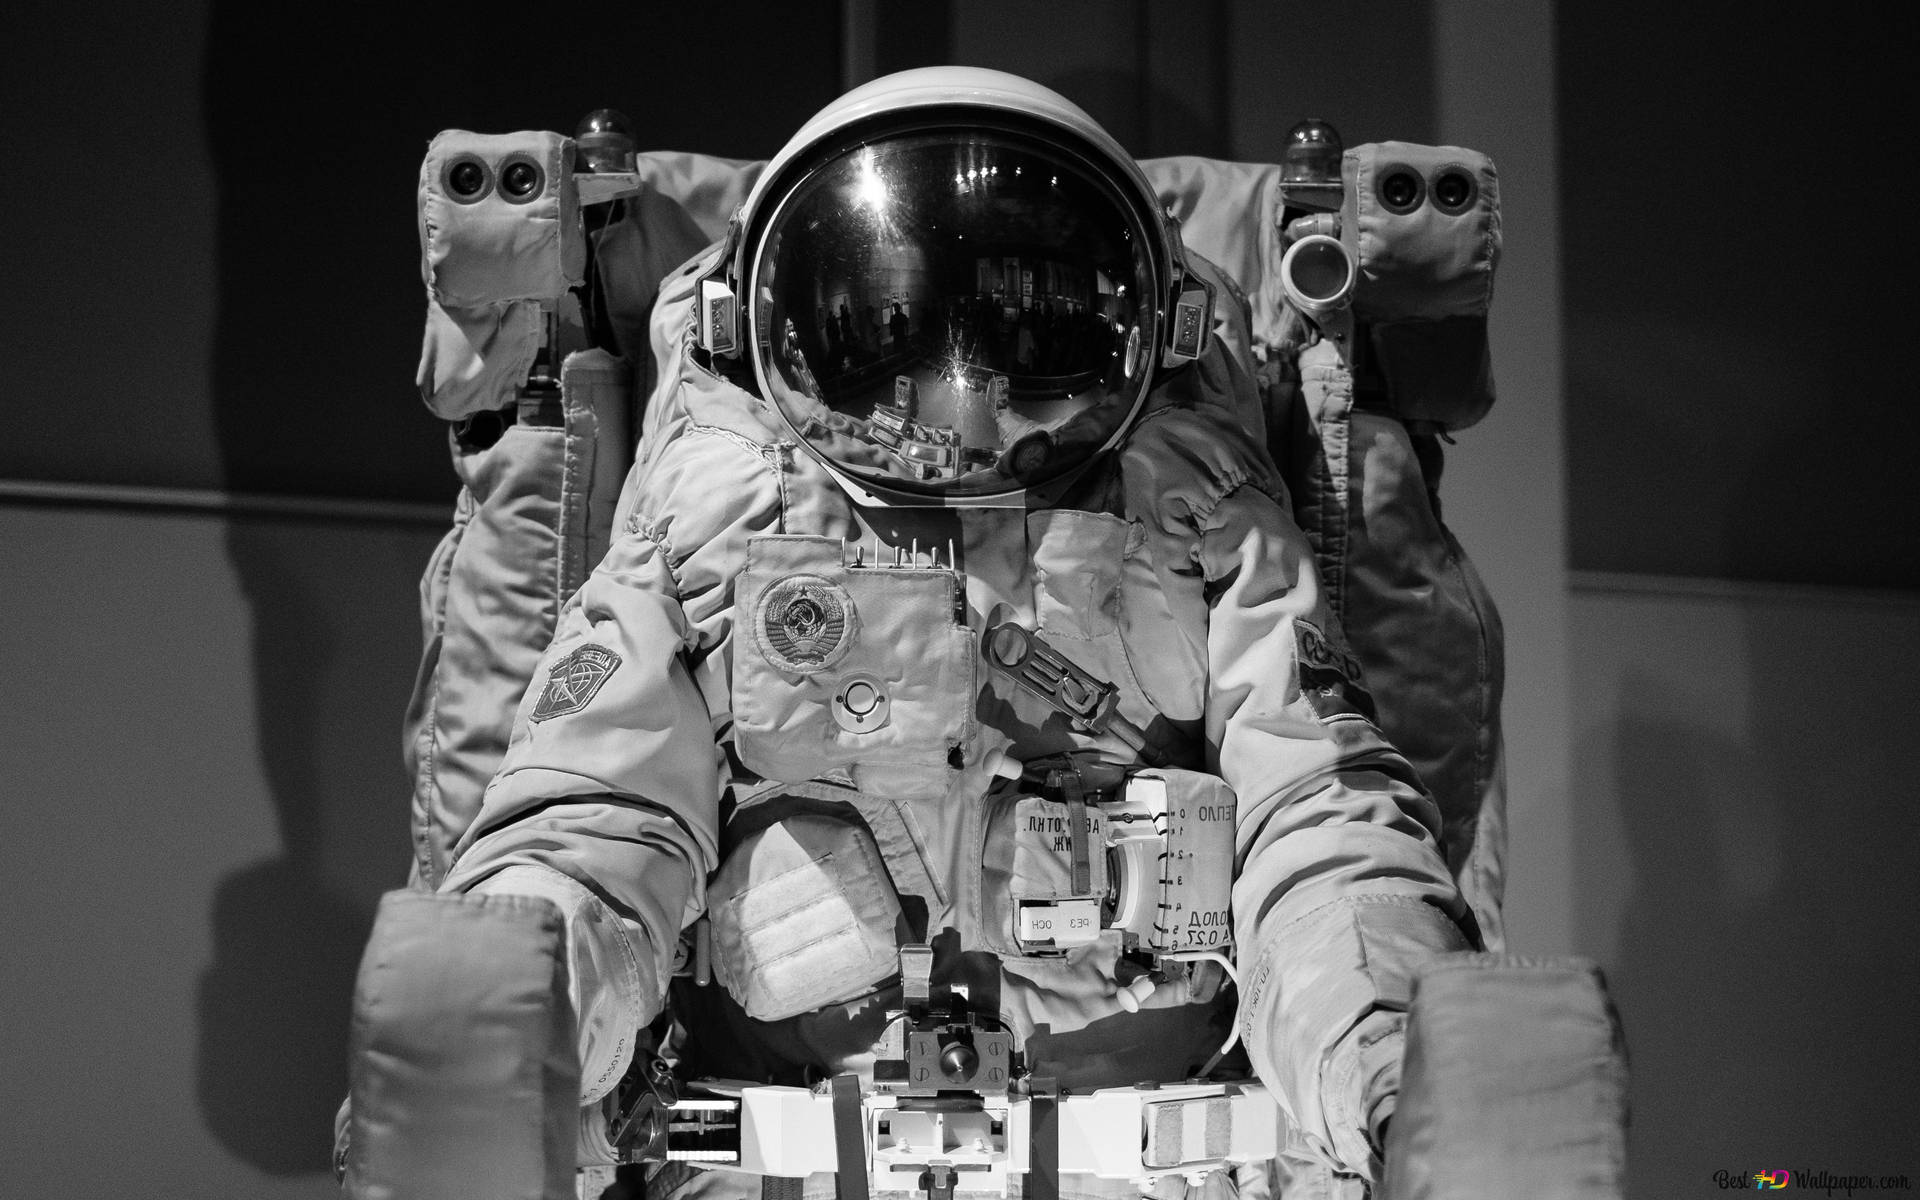 Ensvartvit Astronaut Tar En Titt På Horisonten Bortom Det Oändliga Rymden. Wallpaper